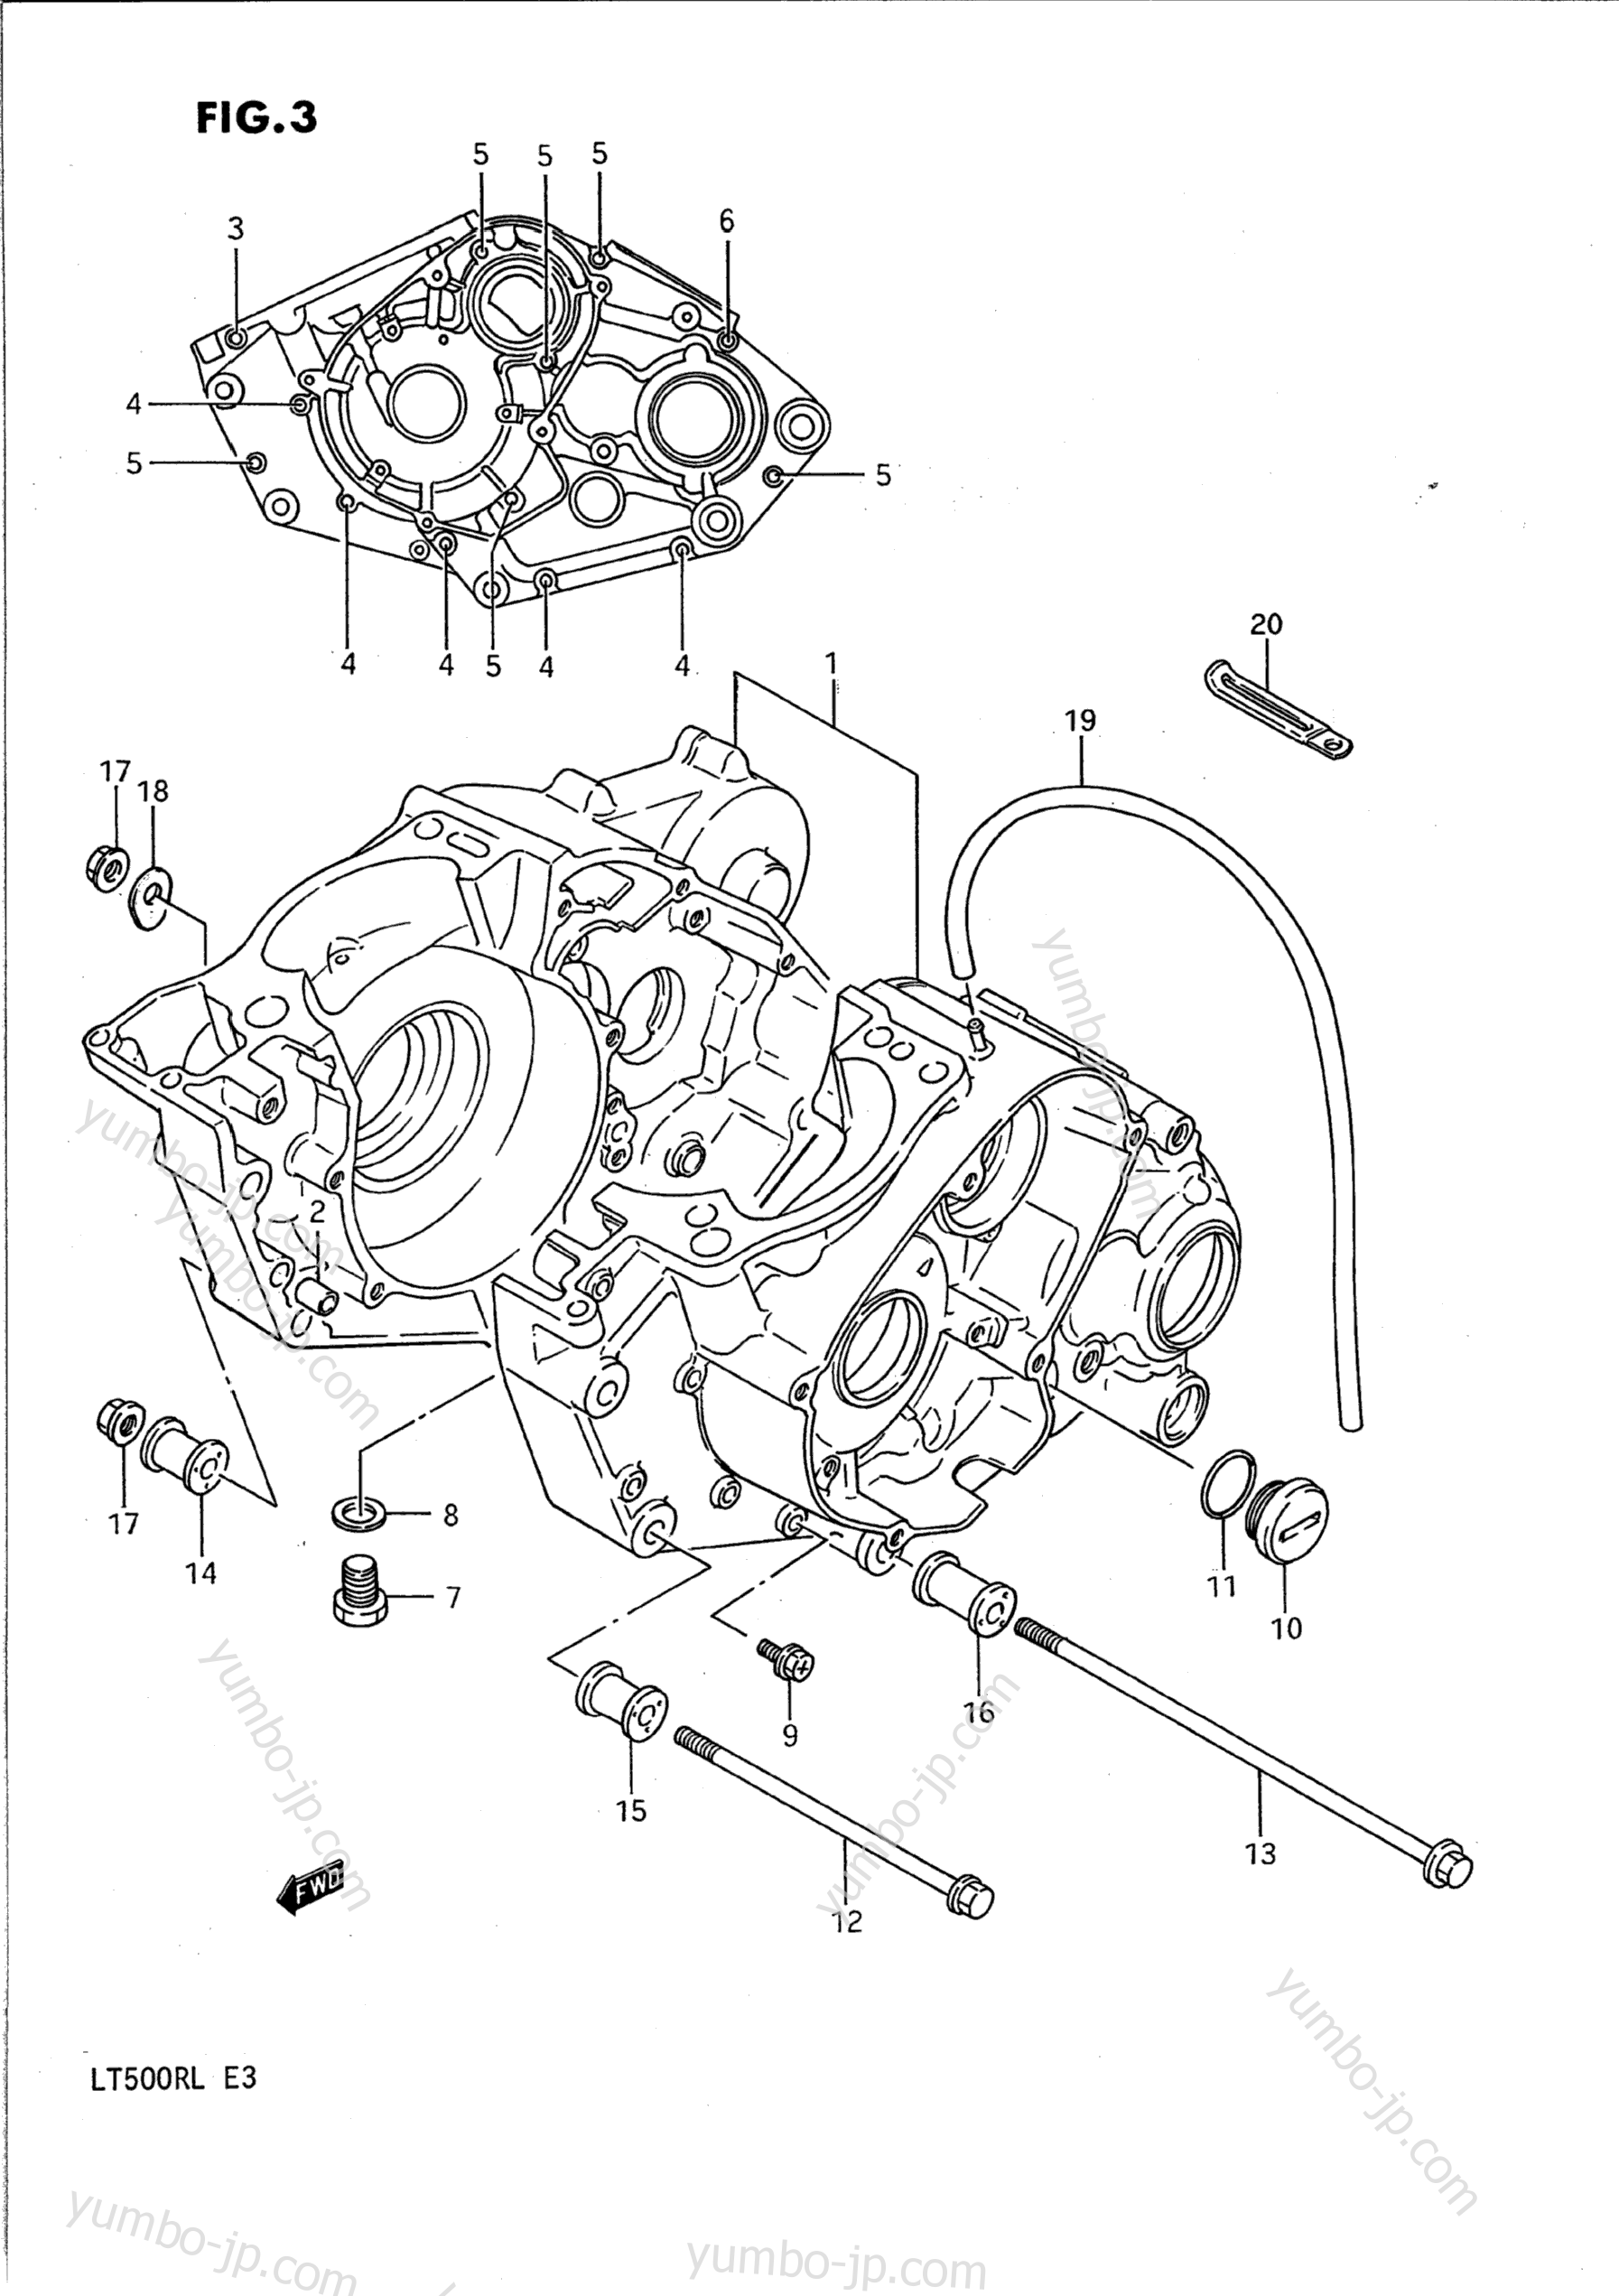 CRANKCASE for ATVs SUZUKI QuadRacer (LT500R) 1989 year